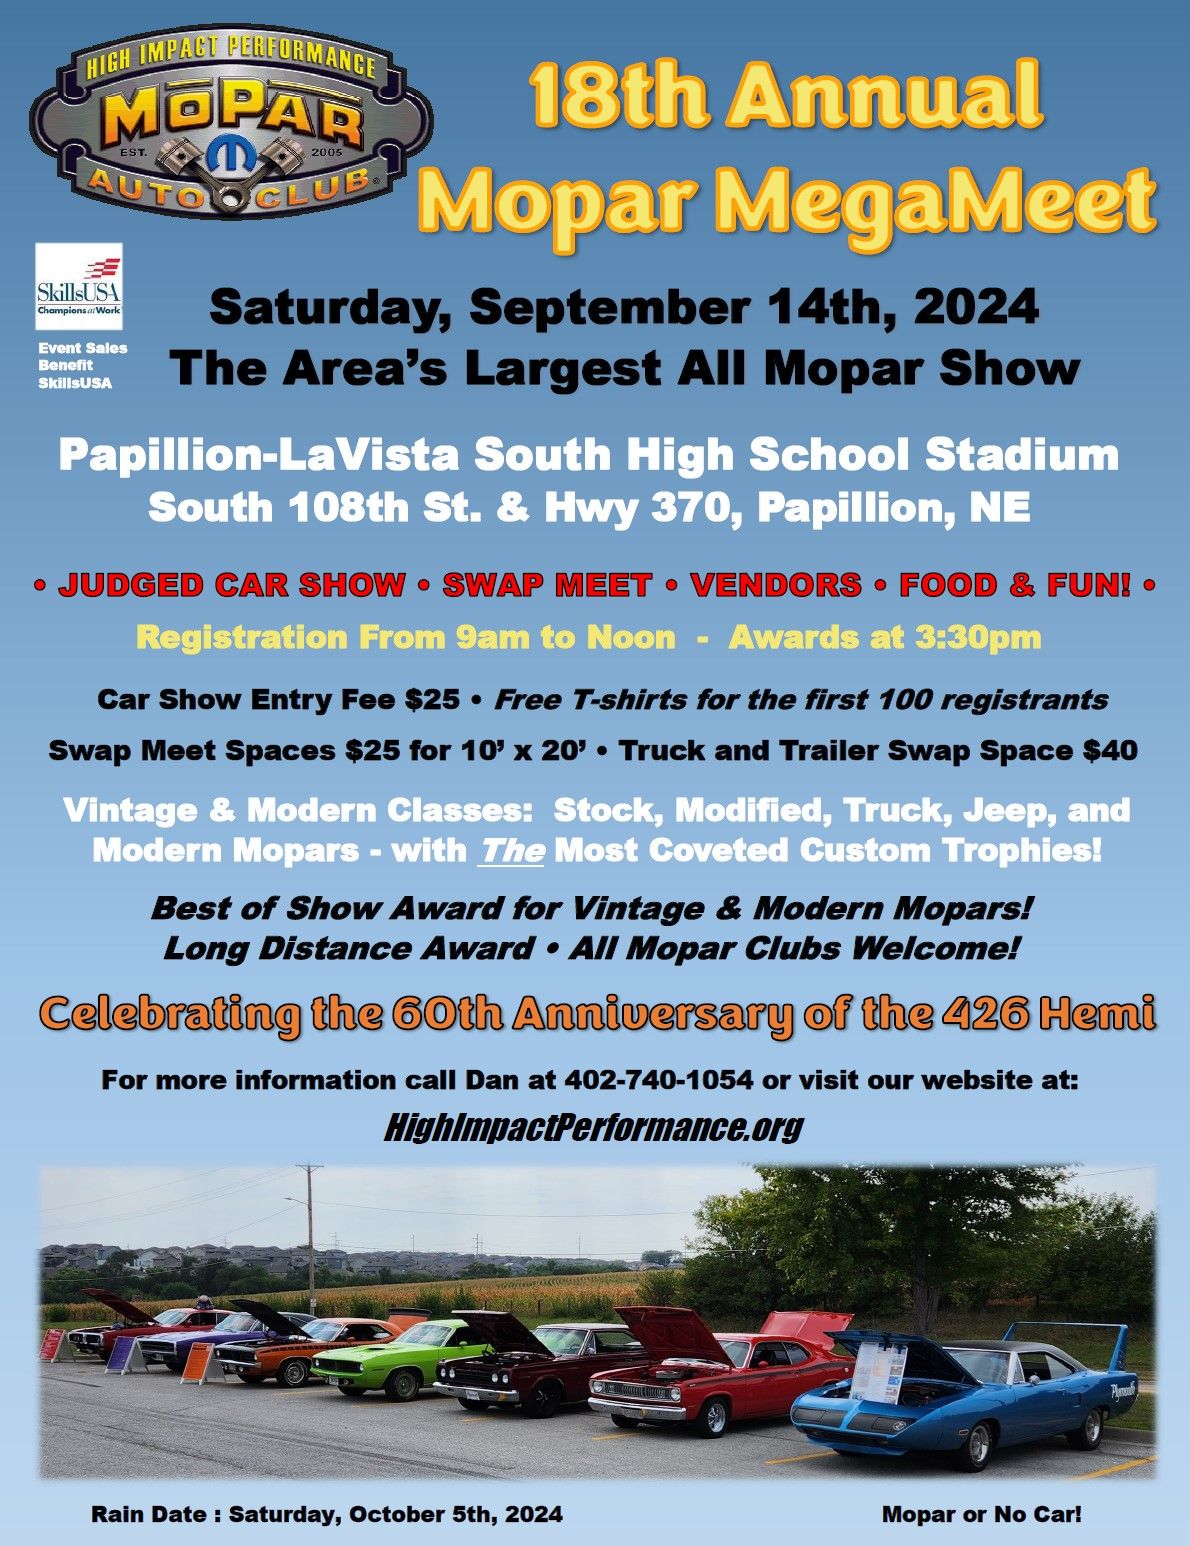 18th Annual Mopar MegaMeet - Car Show and Swap Meet